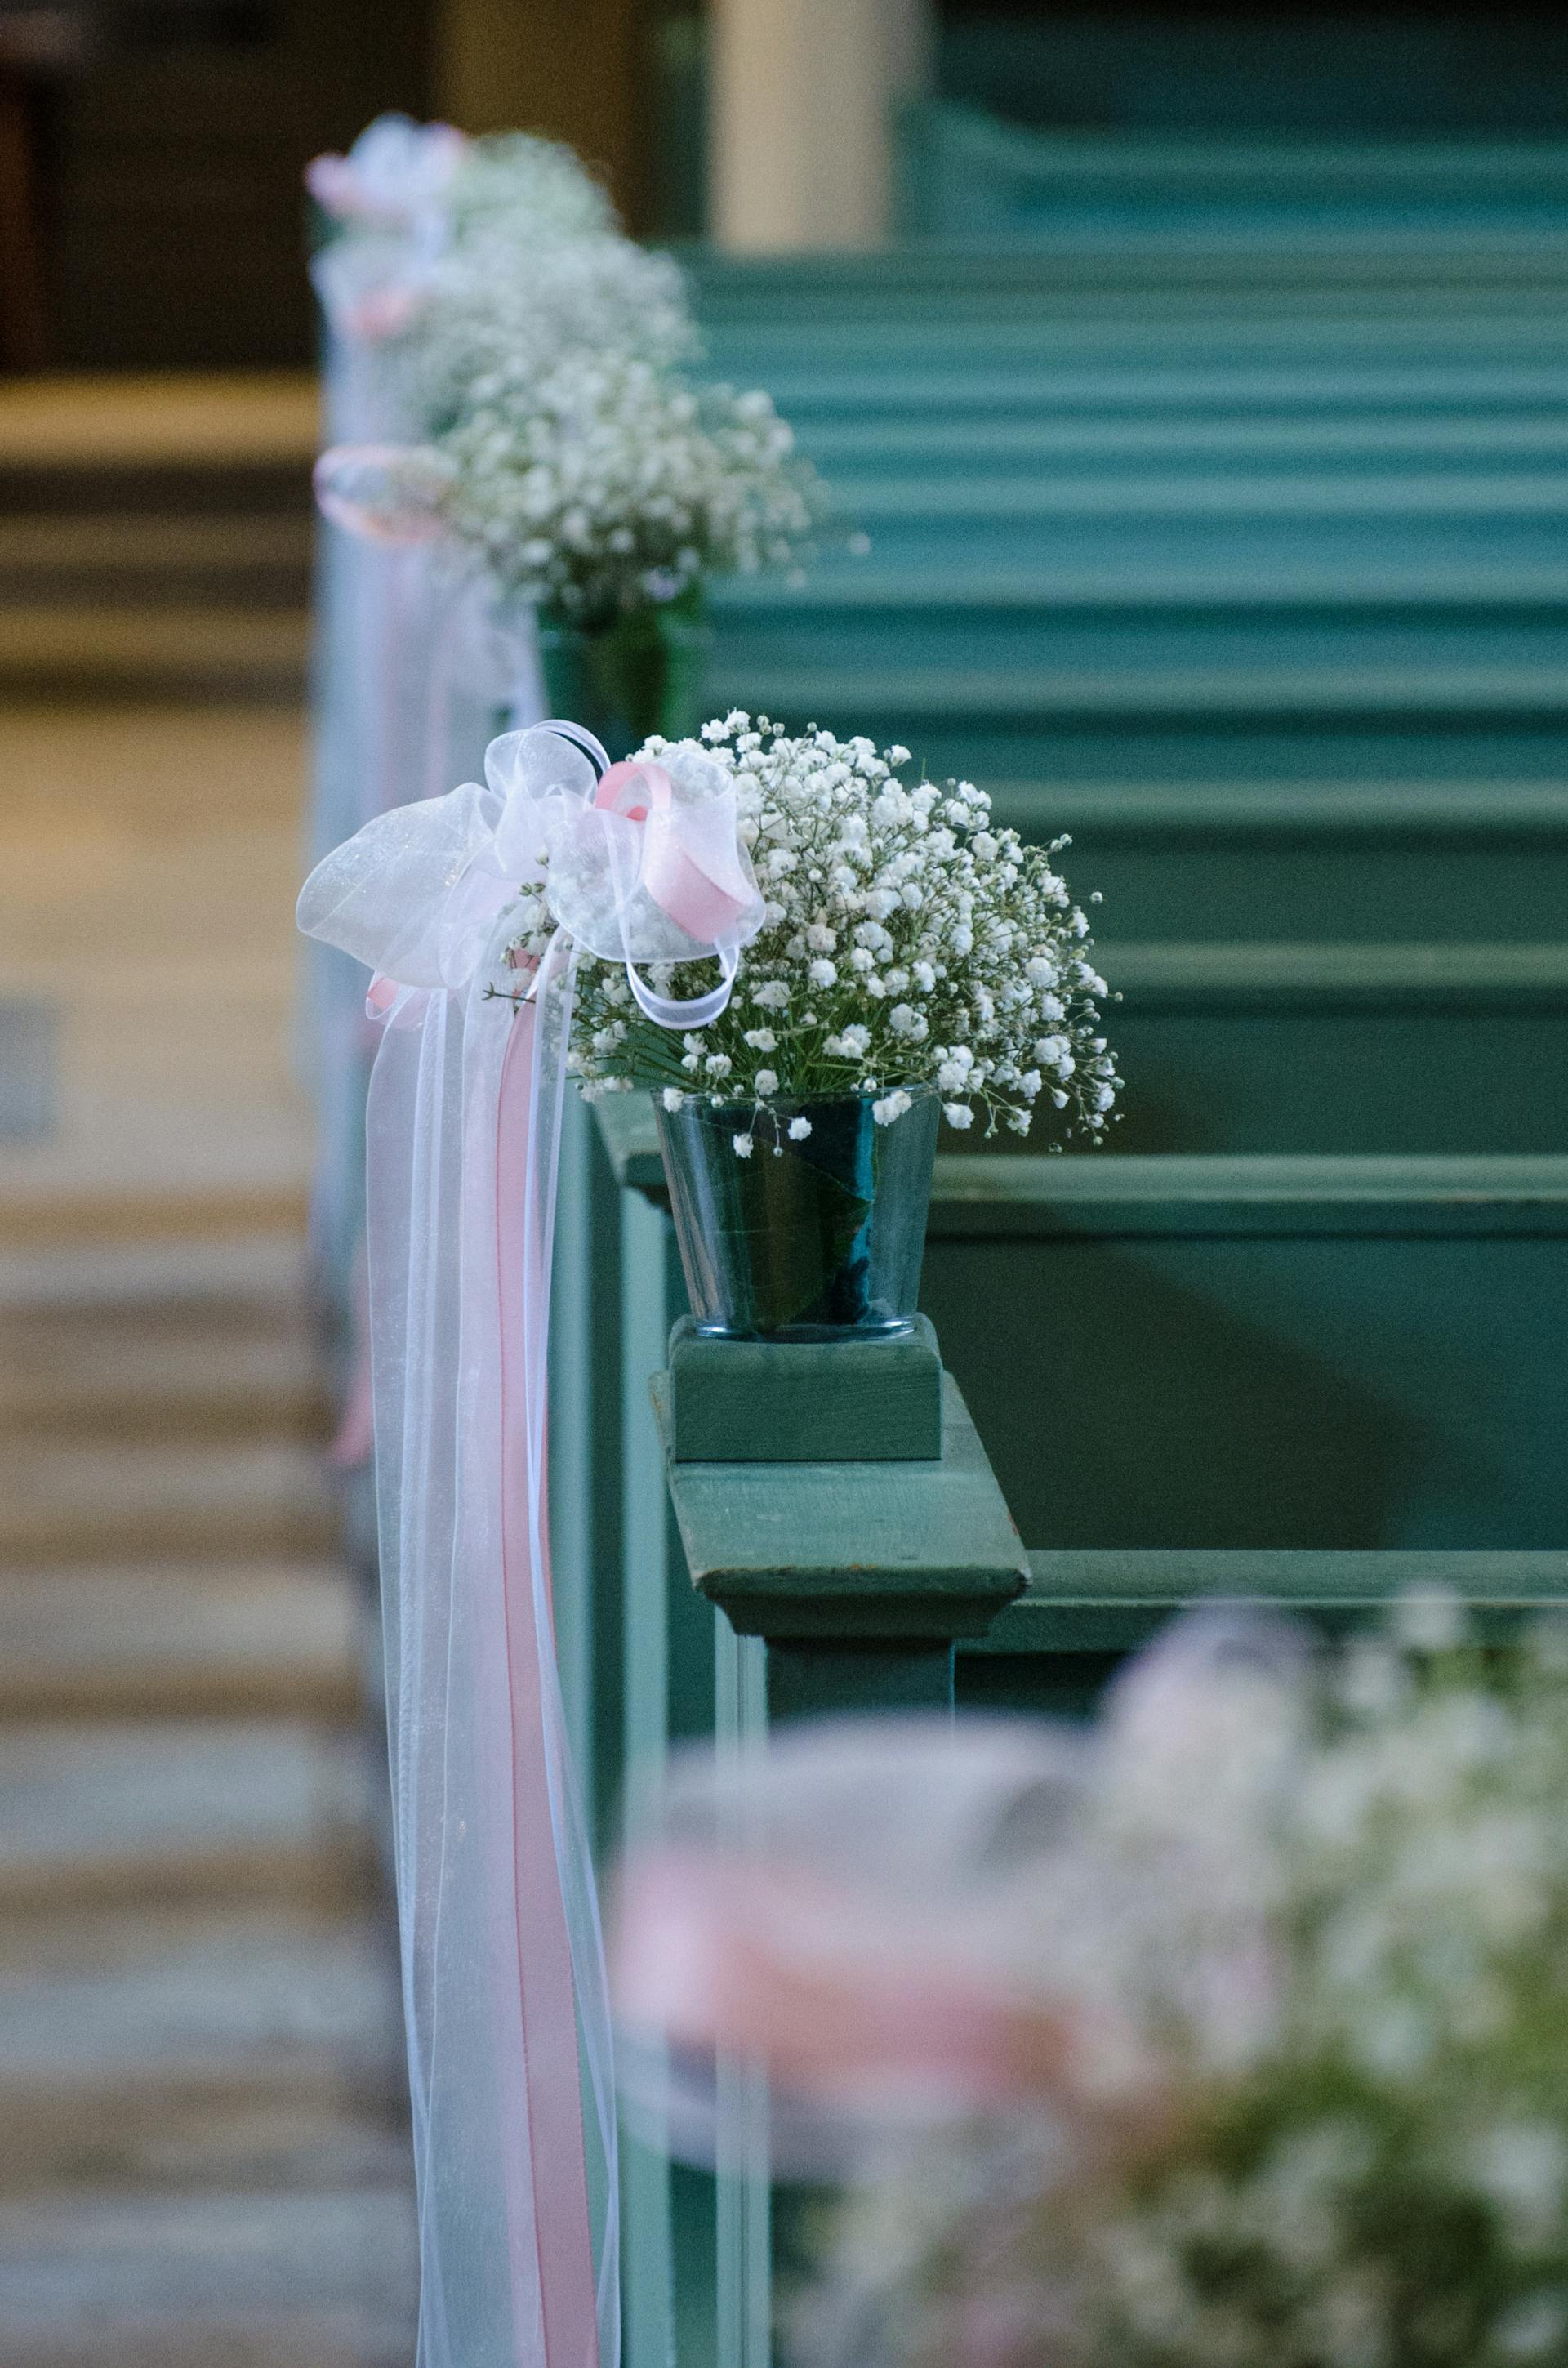 Flores y tul a lo largo de los bancos de una iglesia | Foto: Pexels